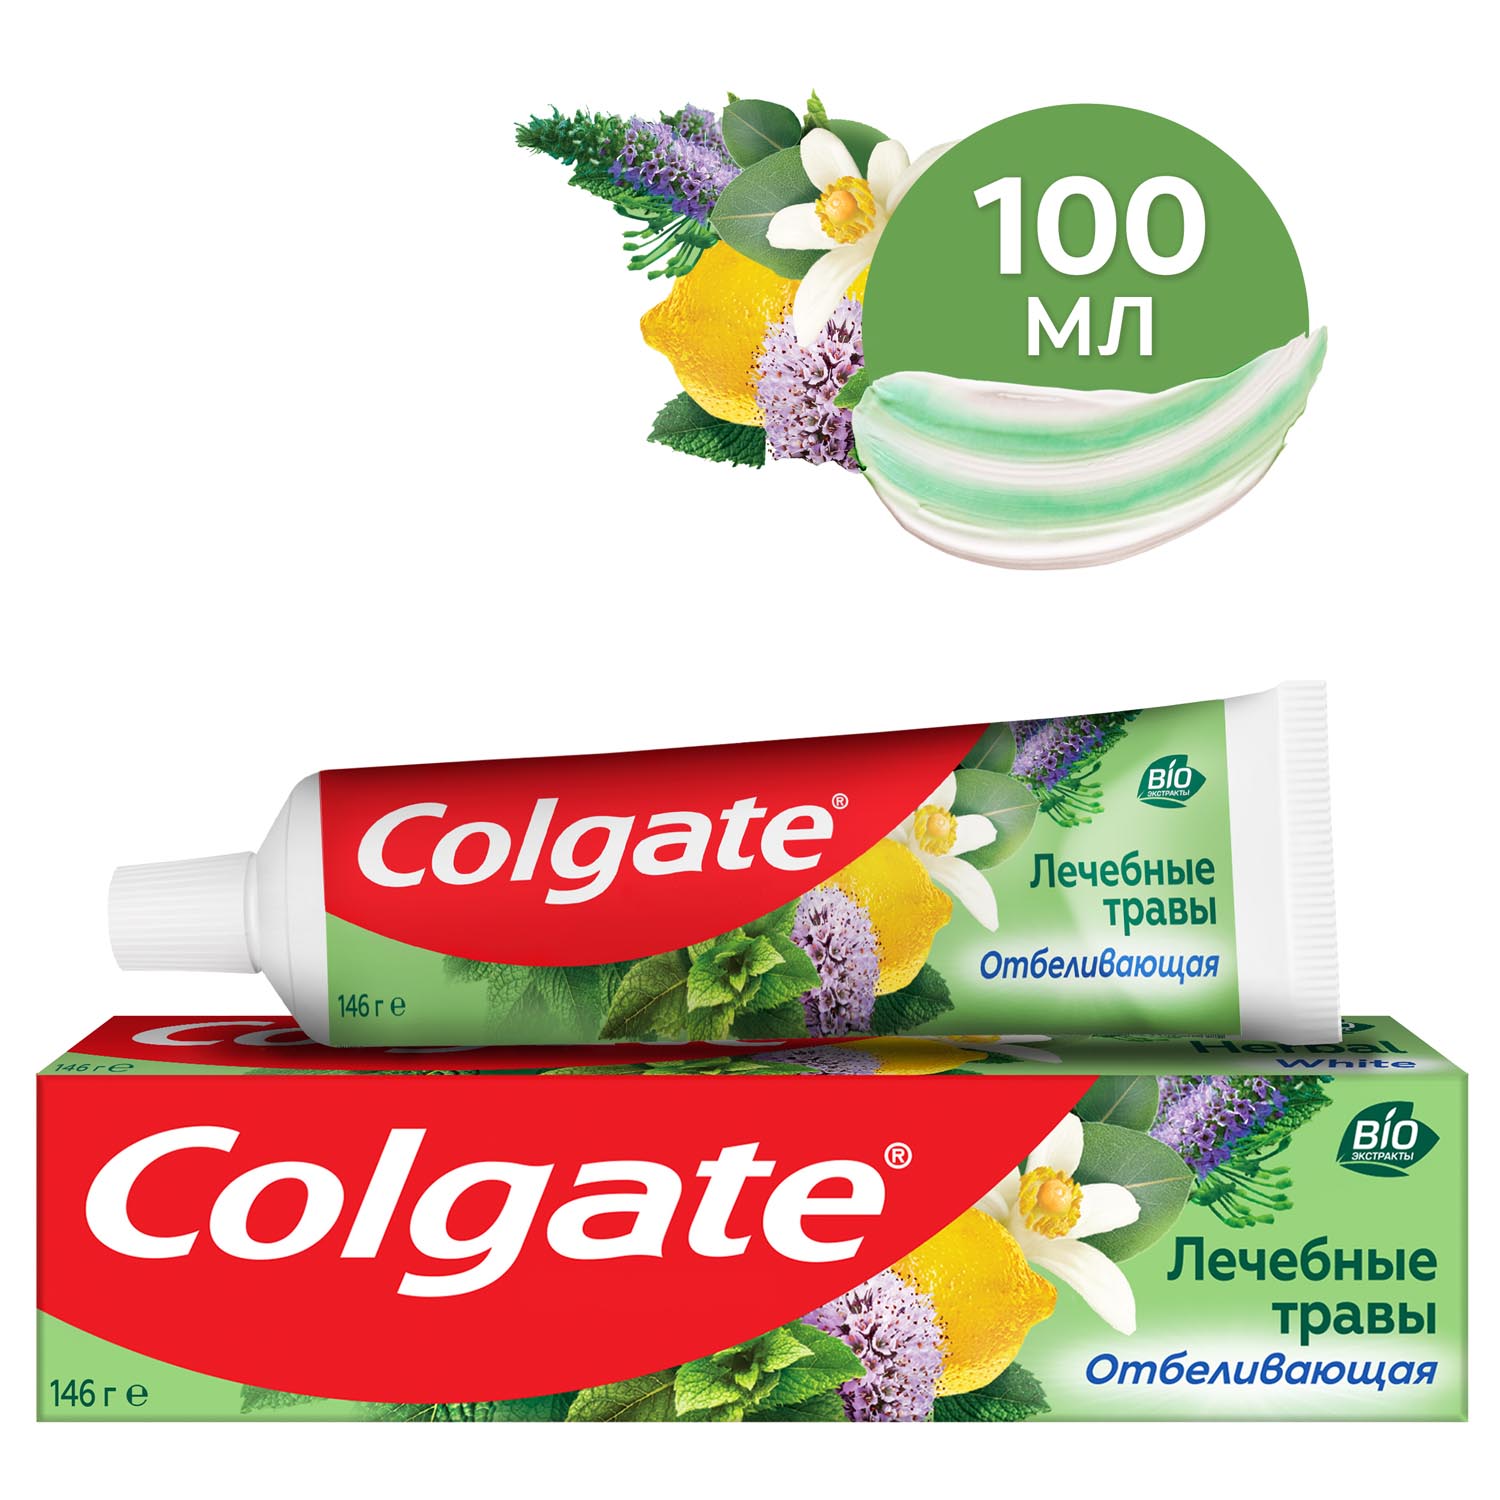 Зубная паста Colgate Лечебные травы отбеливающая с натуральными ингредиентами для здоровья зубов и десен и белоснежной улыбки, 100 мл.